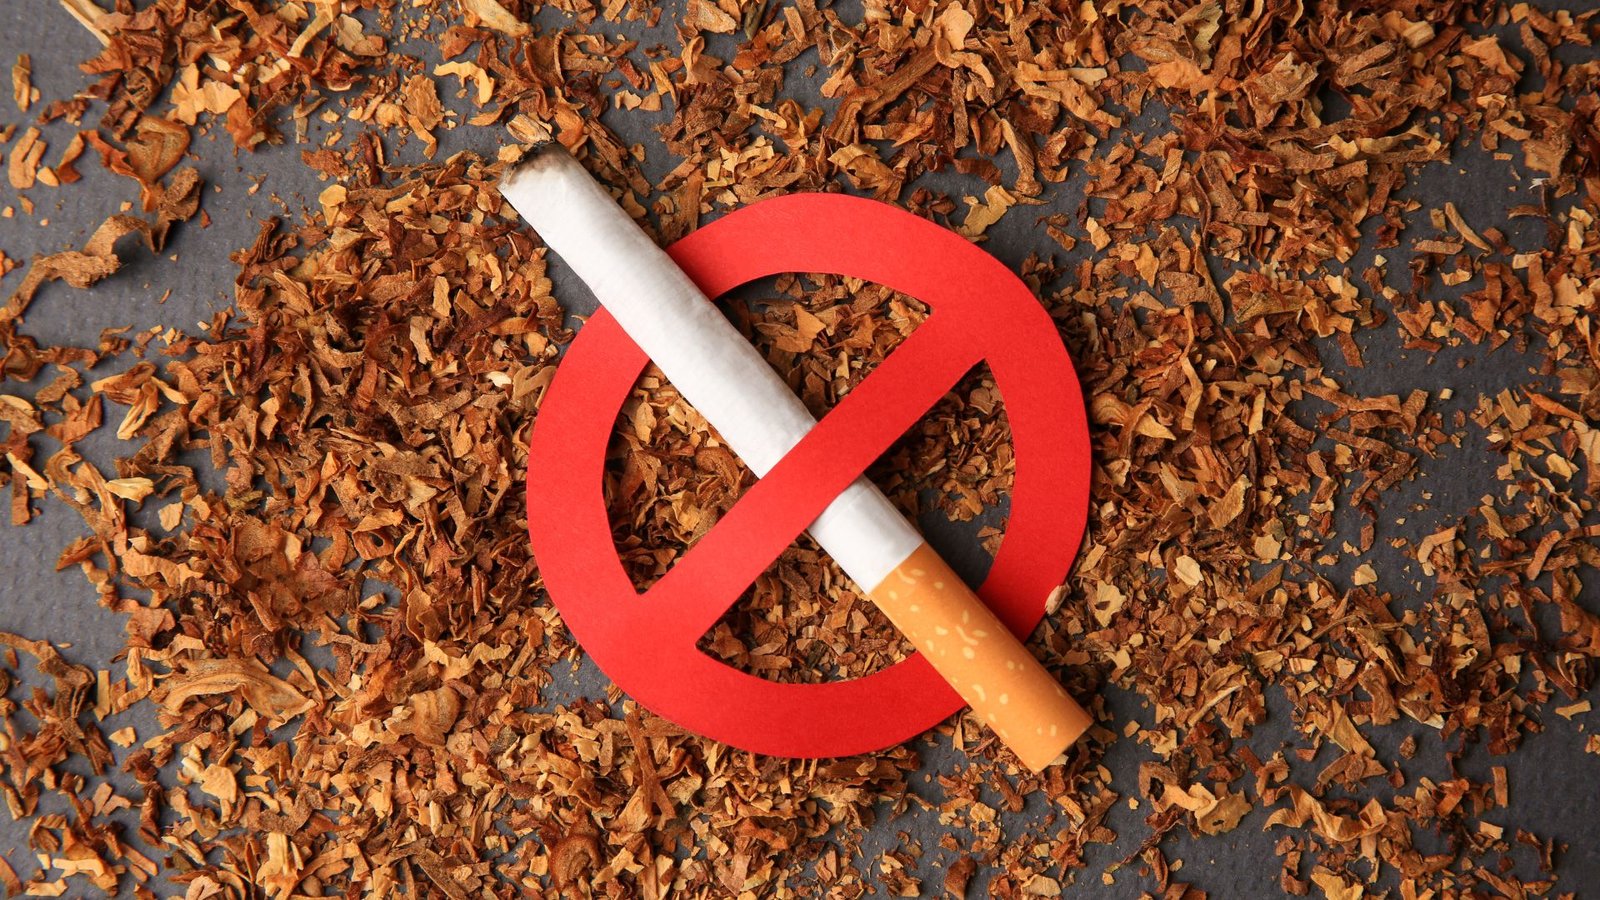 Smoking Ban UK Legislation, Lawforeverything